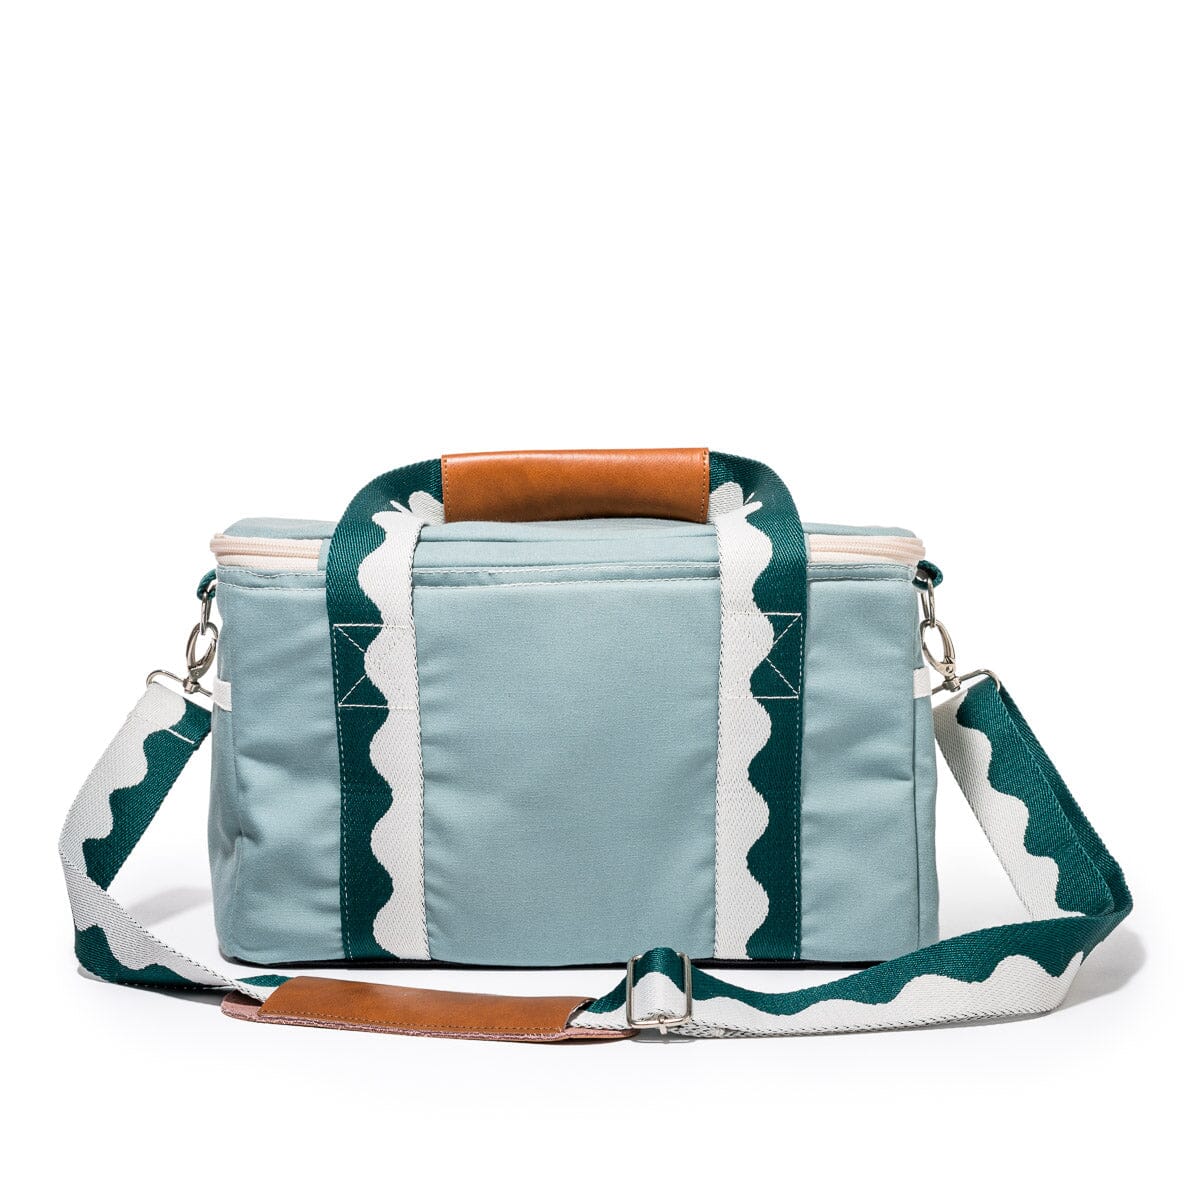 The Premium Cooler Bag - Rivie Green Premium Cooler Bag Business & Pleasure Co Aus 